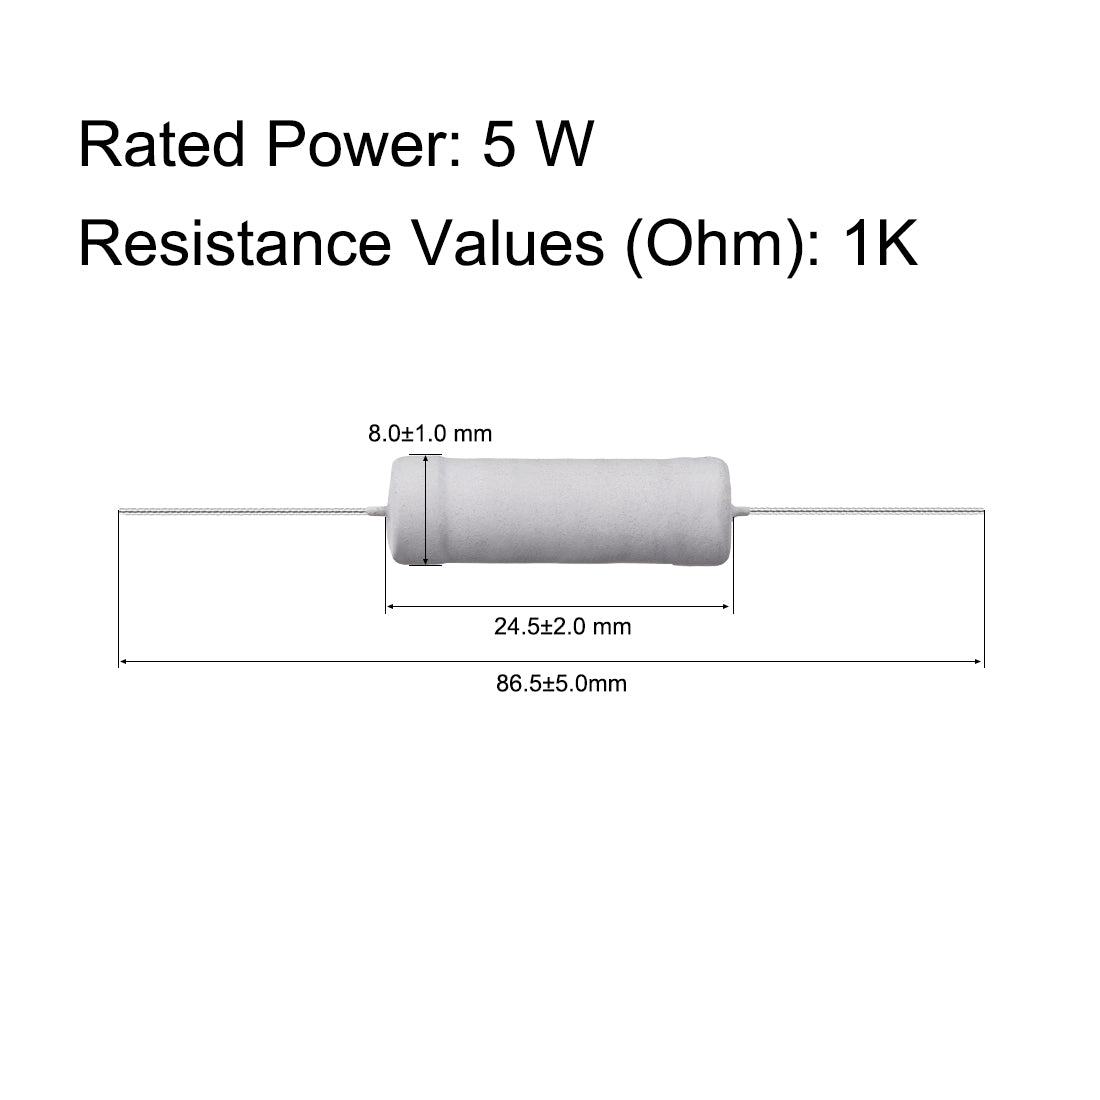 uxcell Uxcell 10 Pcs 5W 5 Watt Metal Oxide Film Resistor Lead 1K Ohm ±5% Tolerance